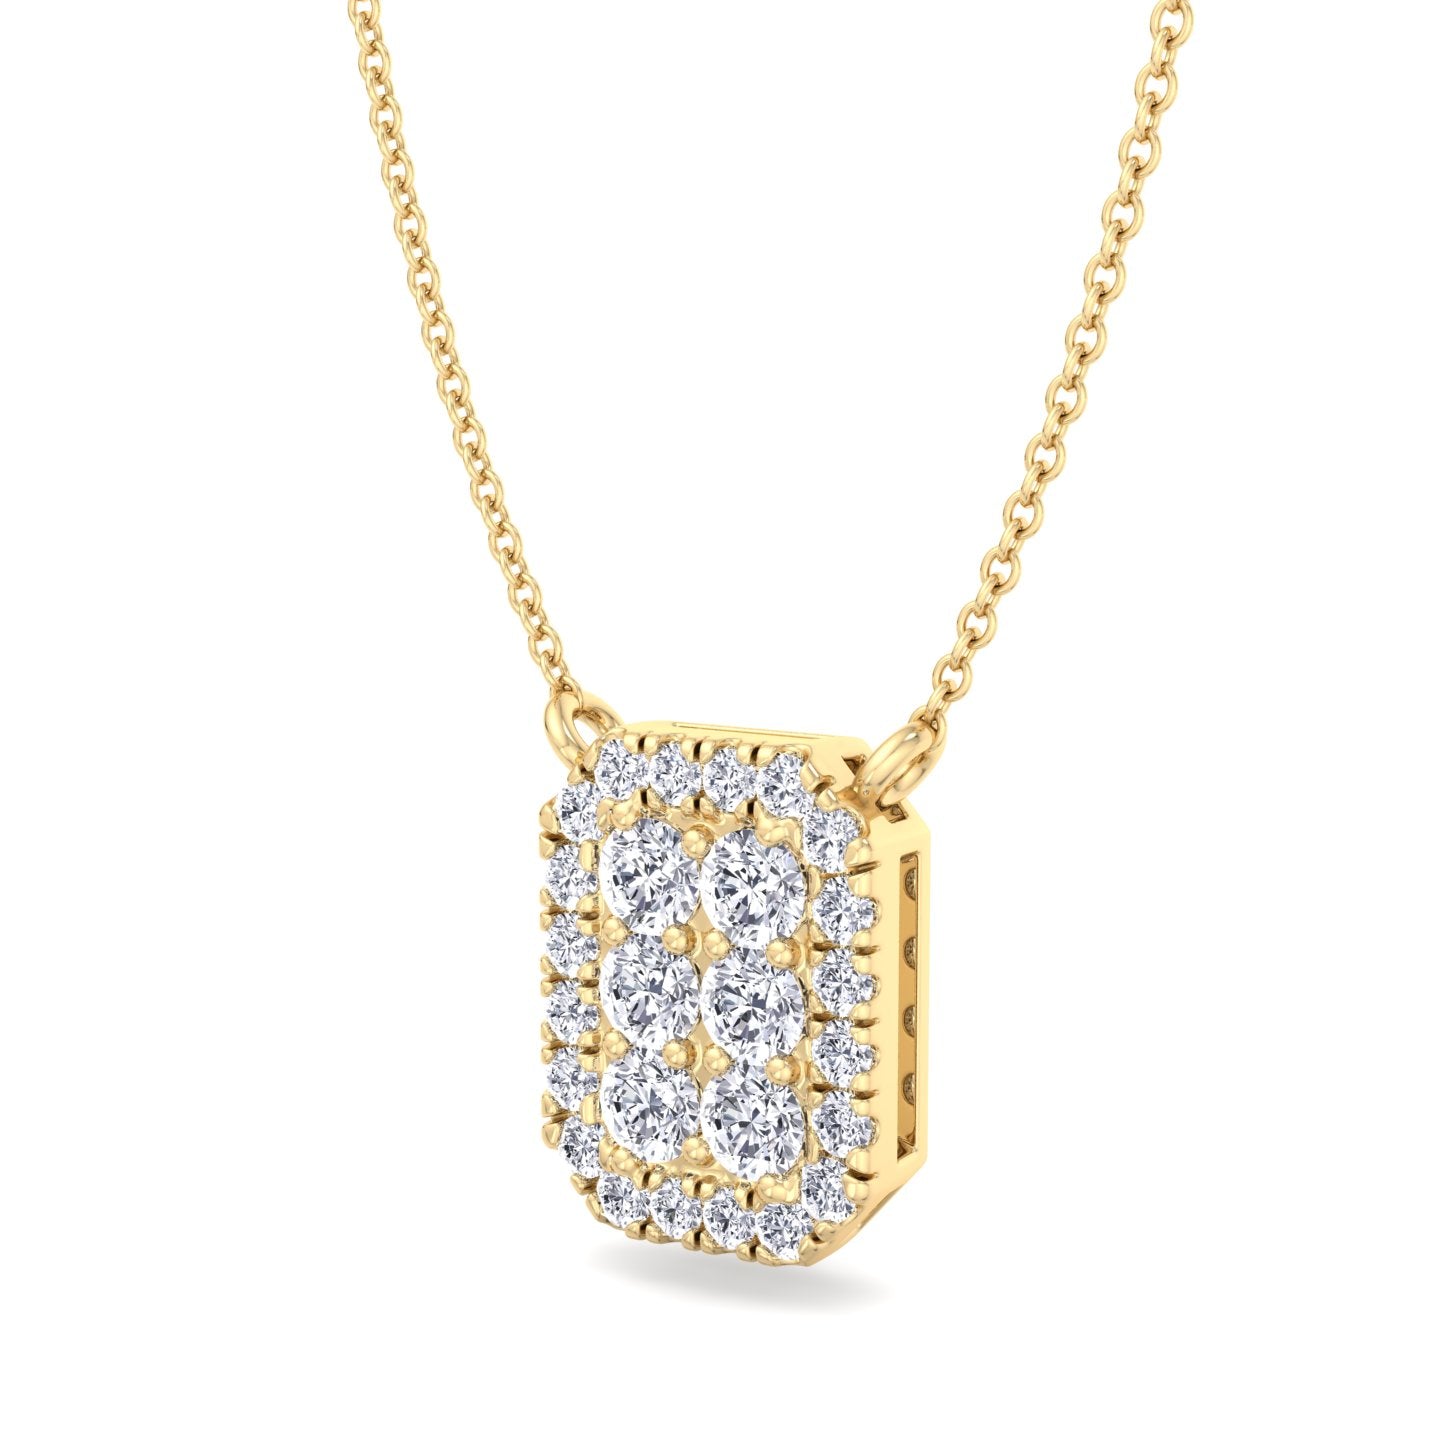 Athens - 1 Carat Emerald Shape Diamond Pendant Necklace